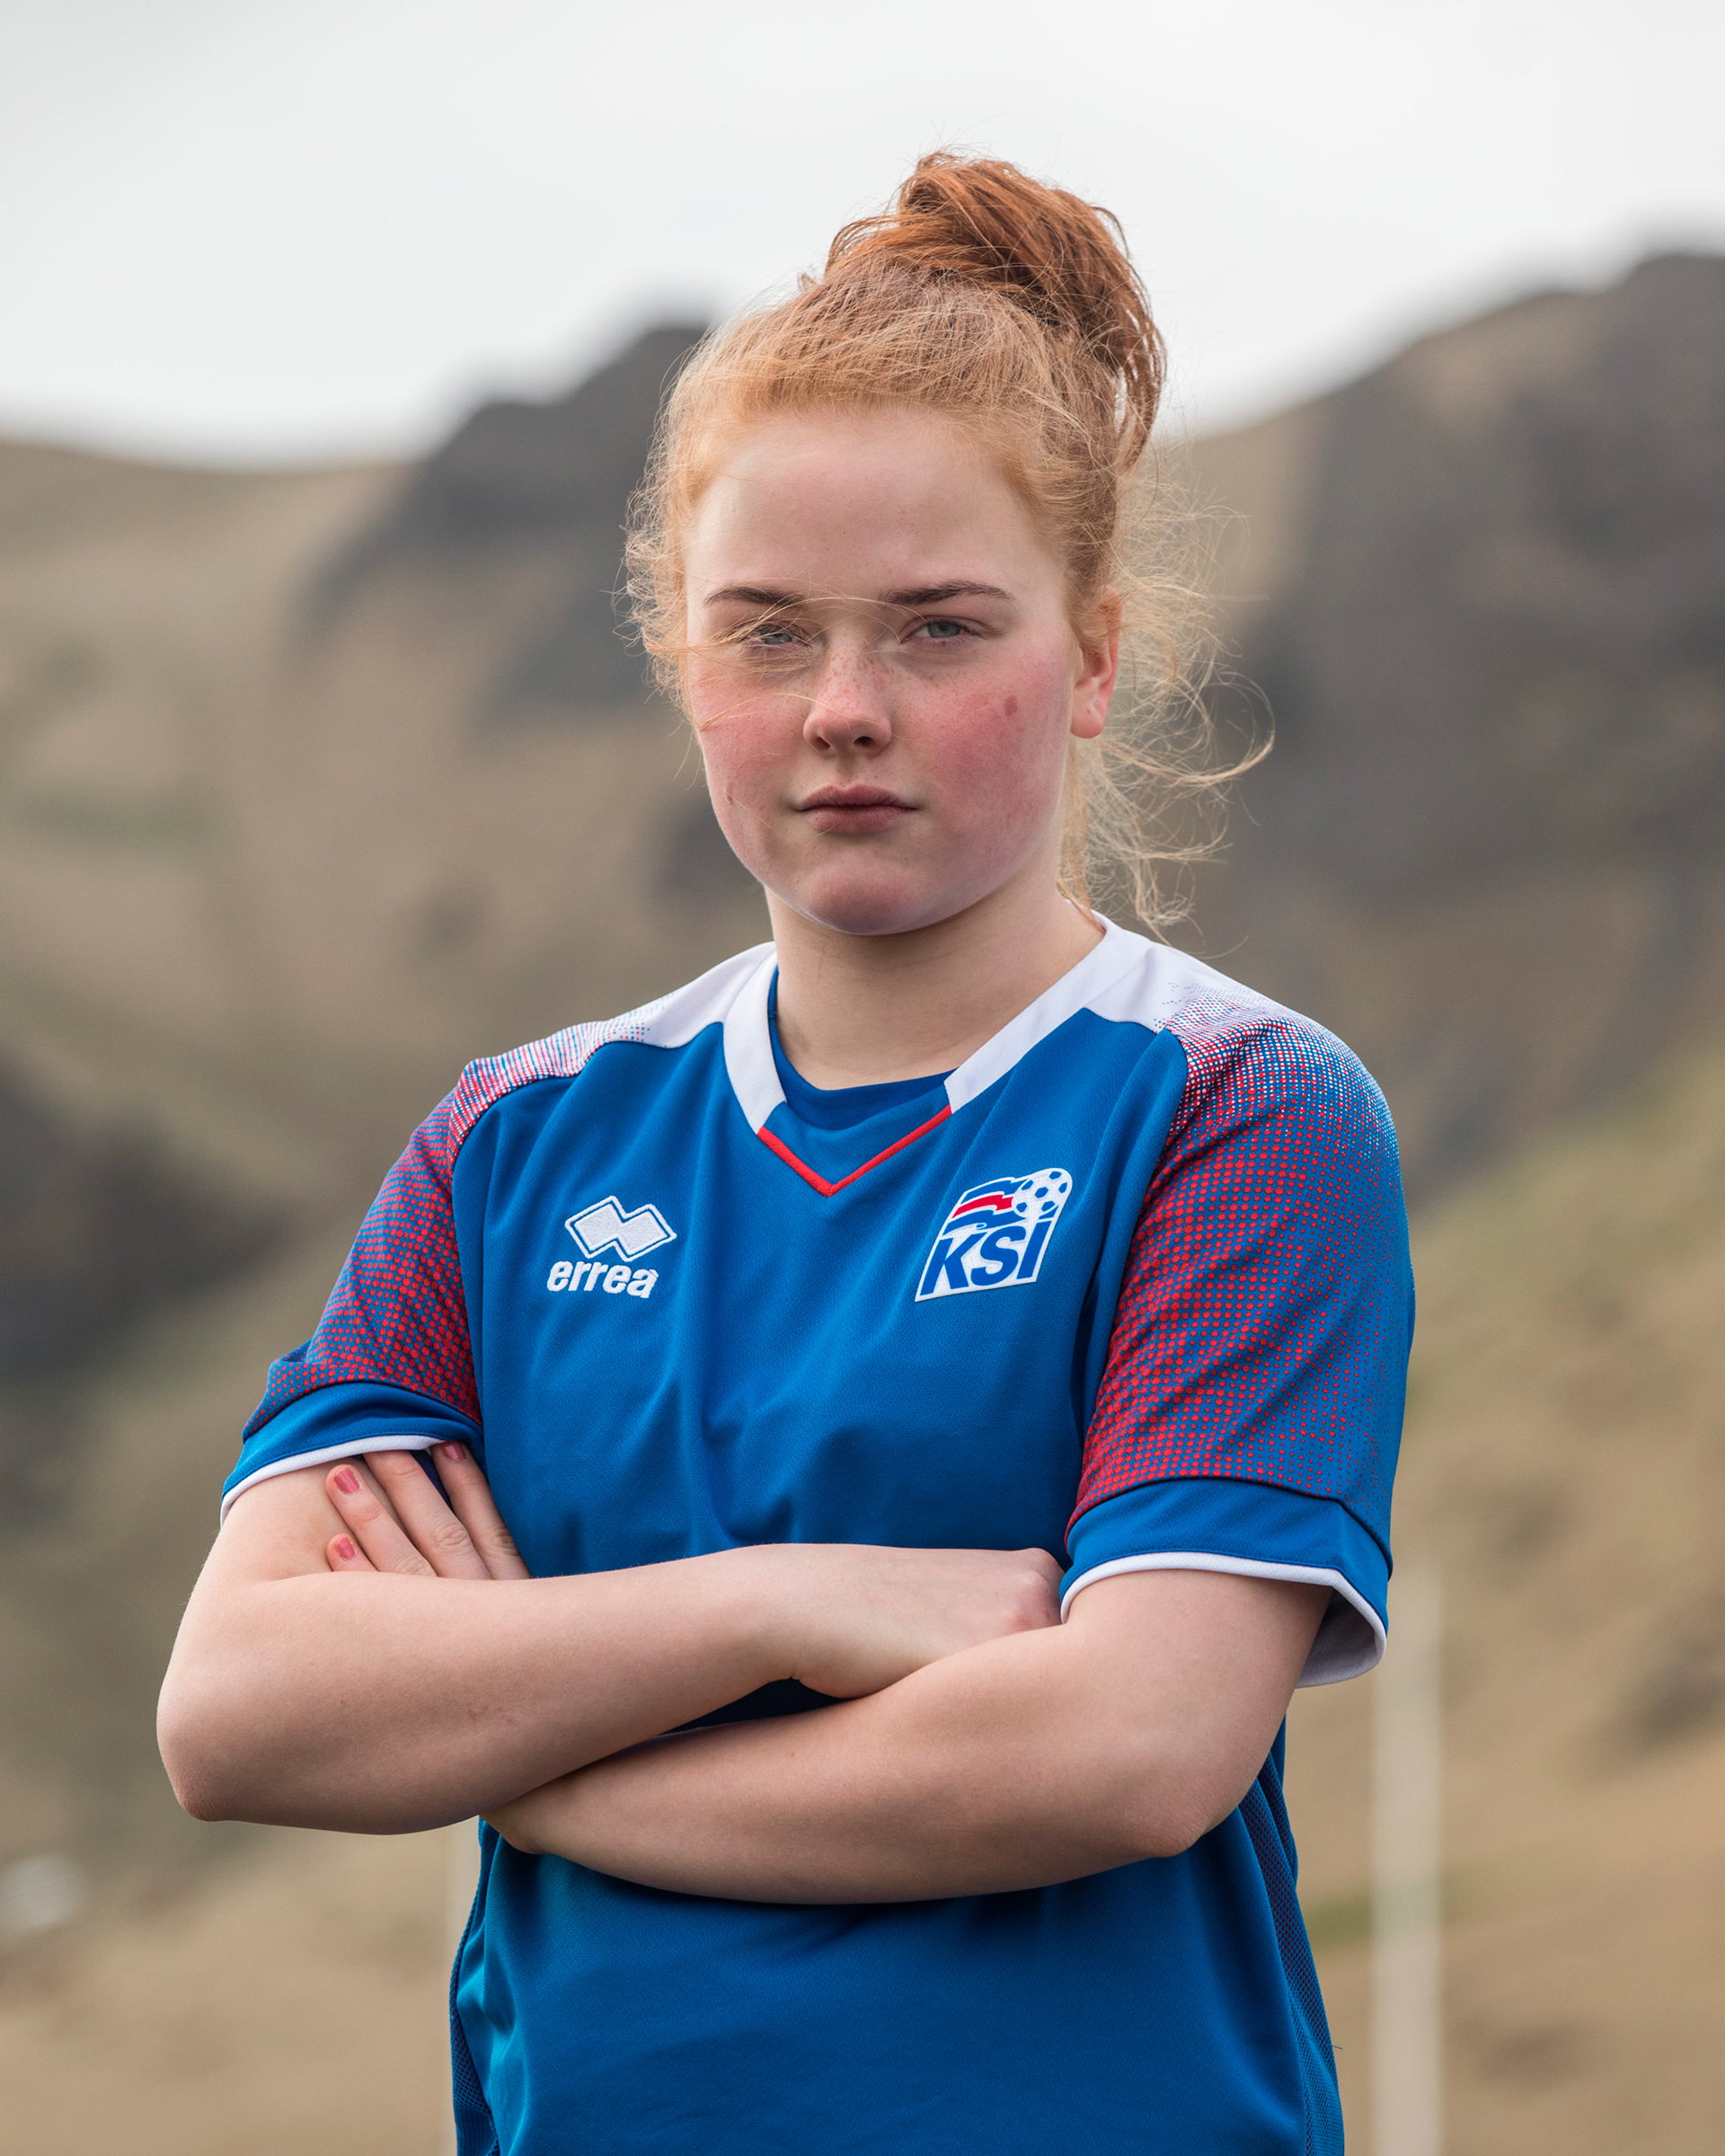 Футбол &mdash; второй по популярности вид спорта среди женщин Исландии после командной гимнастики. Женская футбольная сборная занимает 20-е место в рейтинге ФИФА из 177. В 2017 году она приняла участие в чемпионате Европы, но не вышла из группы.
